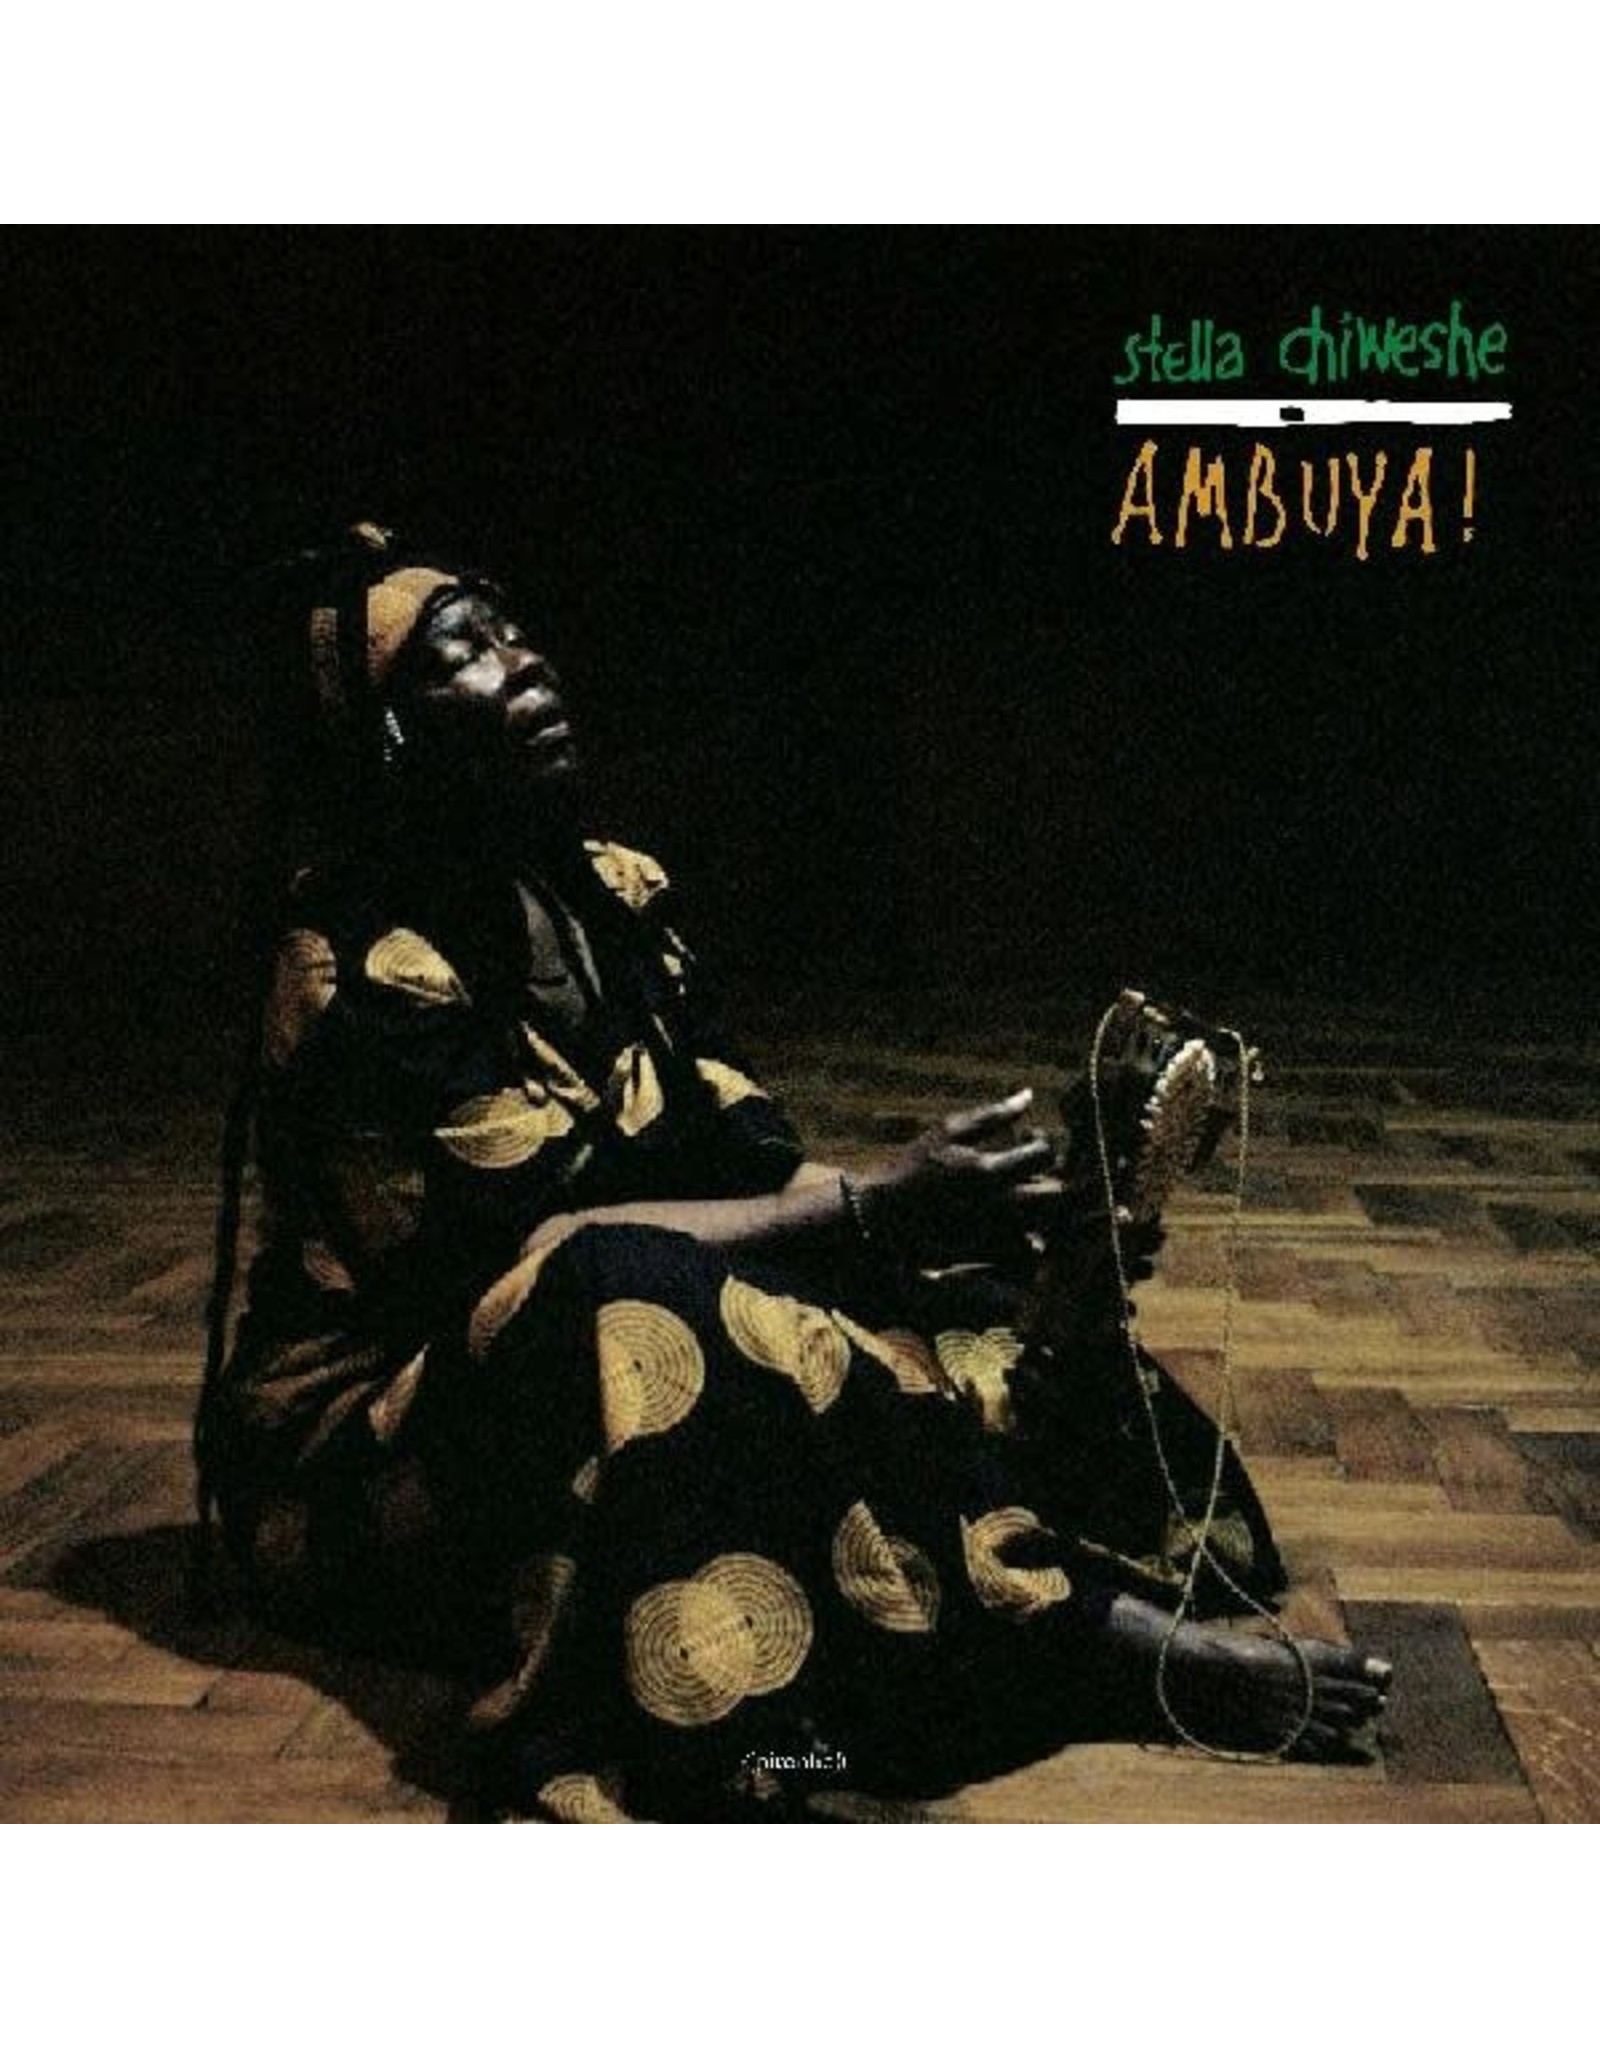 New Vinyl Stella Chiweshe - Ambuya!